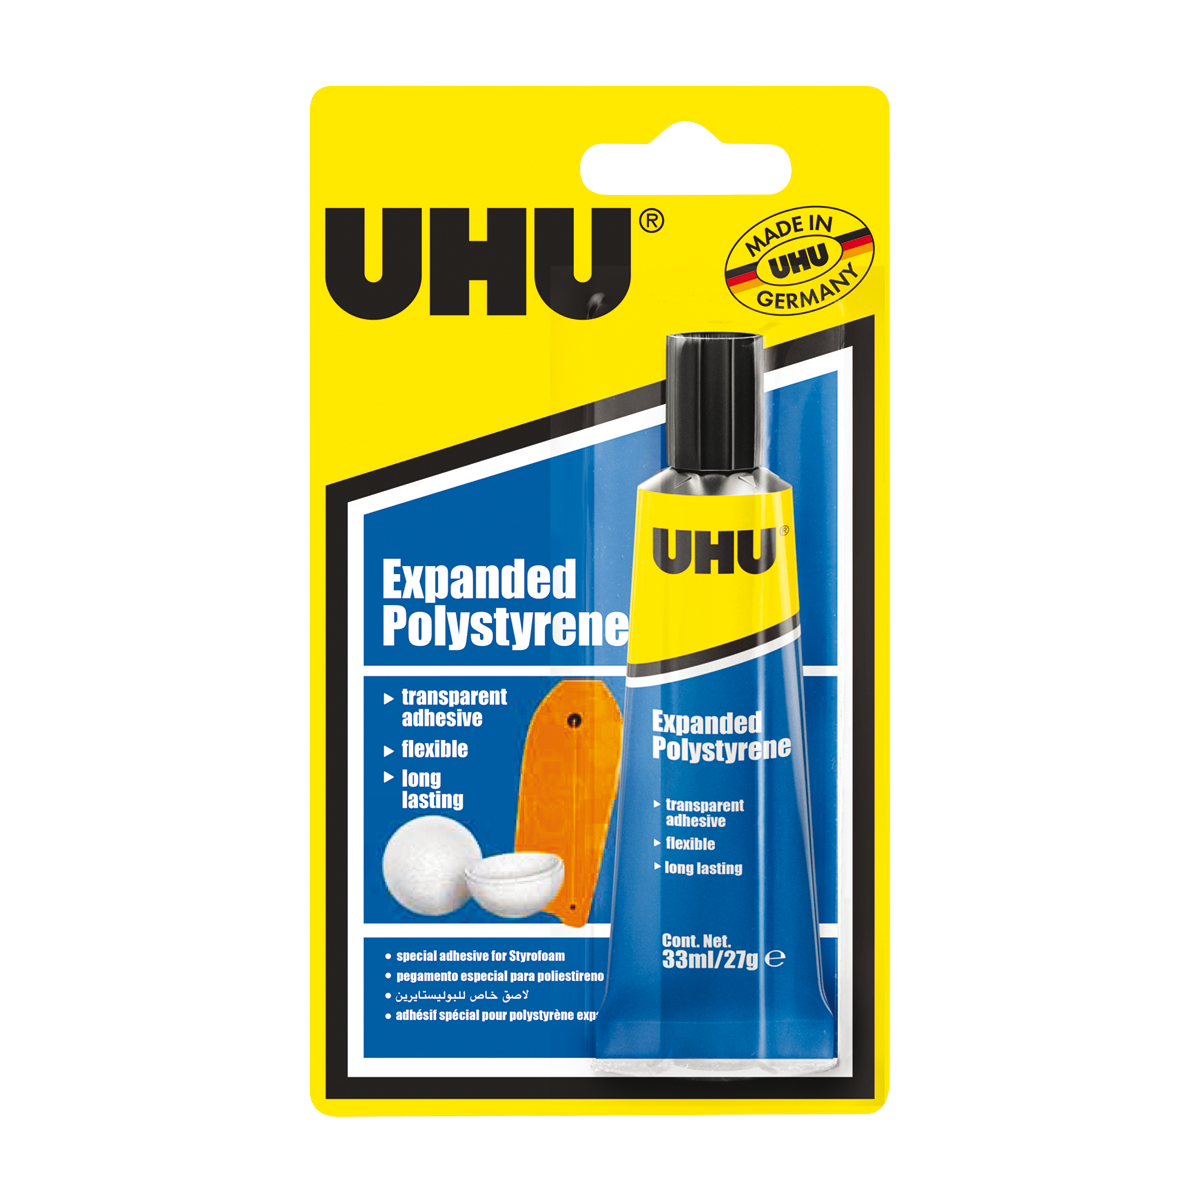 UHU Bolivia - #UHUallplast es un pegamento universal transparente y fuerte  apto para pegar todo tipo de plásticos y otros materiales. Ideal para  numerosas aplicaciones domésticas, manualidades, reparaciones y maquetería.  * Cristalino. *